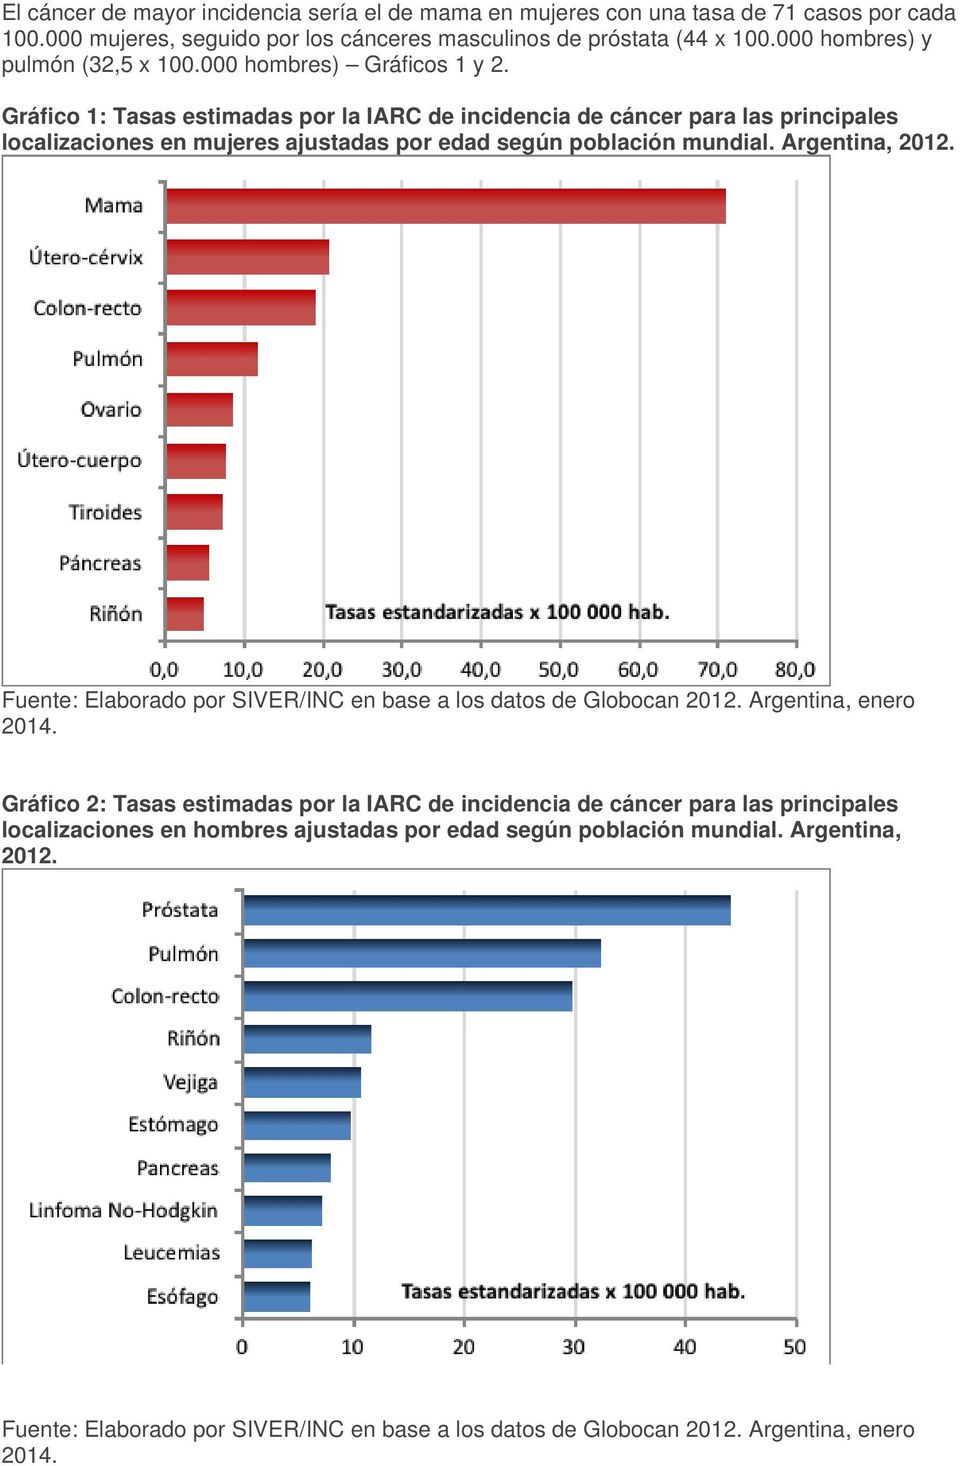 Gráfico 1: Tasas estimadas por la IARC de incidencia de cáncer para las principales localizaciones en mujeres ajustadas por edad según población mundial. Argentina, 2012.